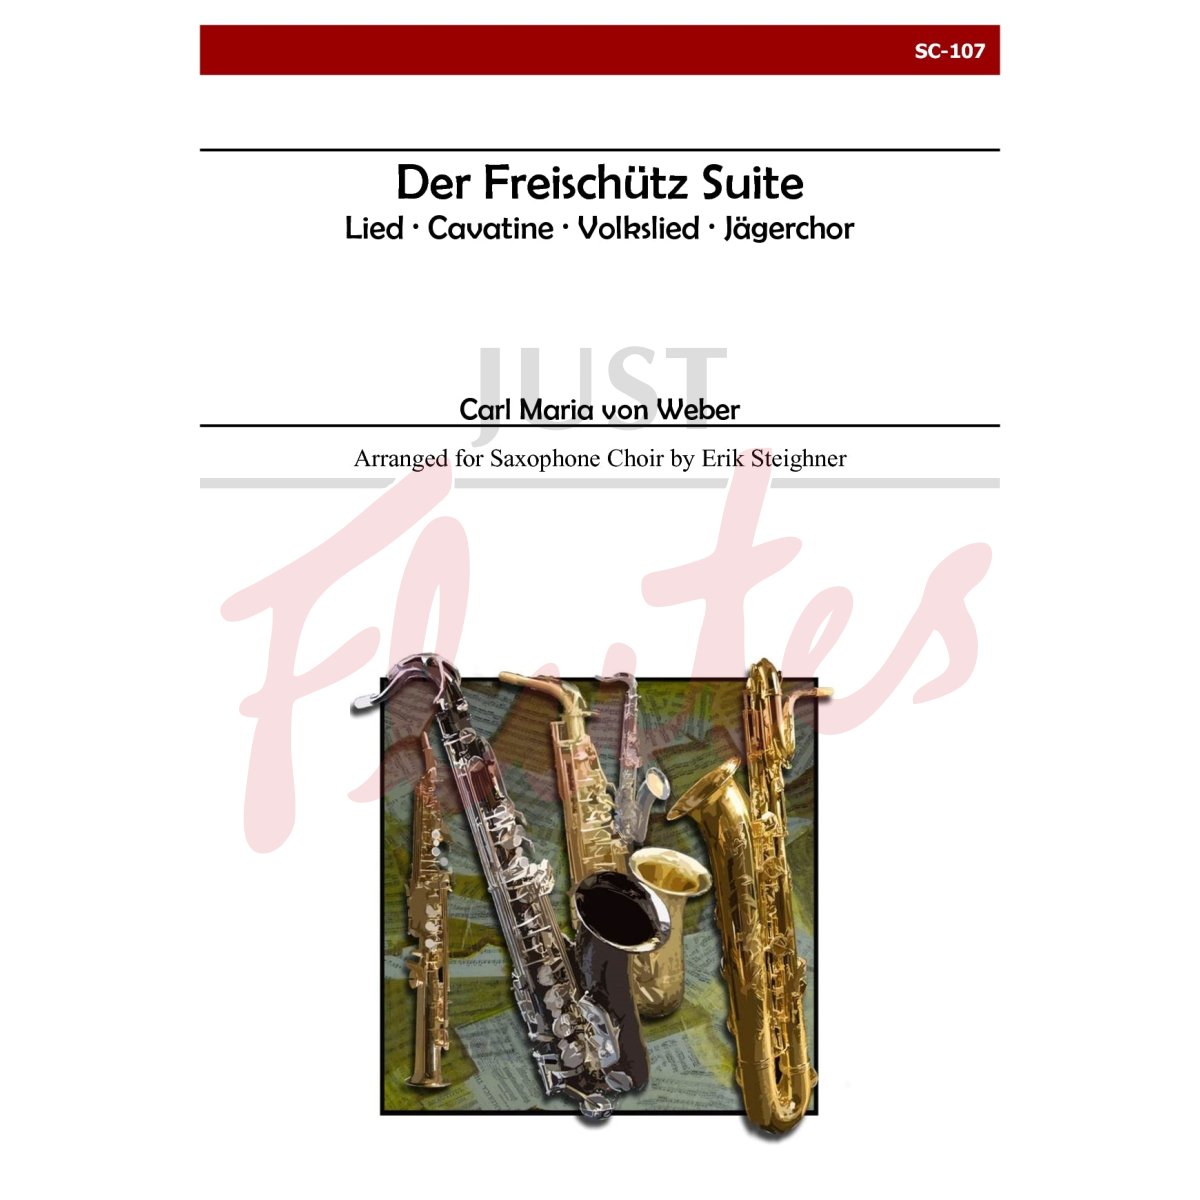 Der Freischutz Suite for Saxophone Choir